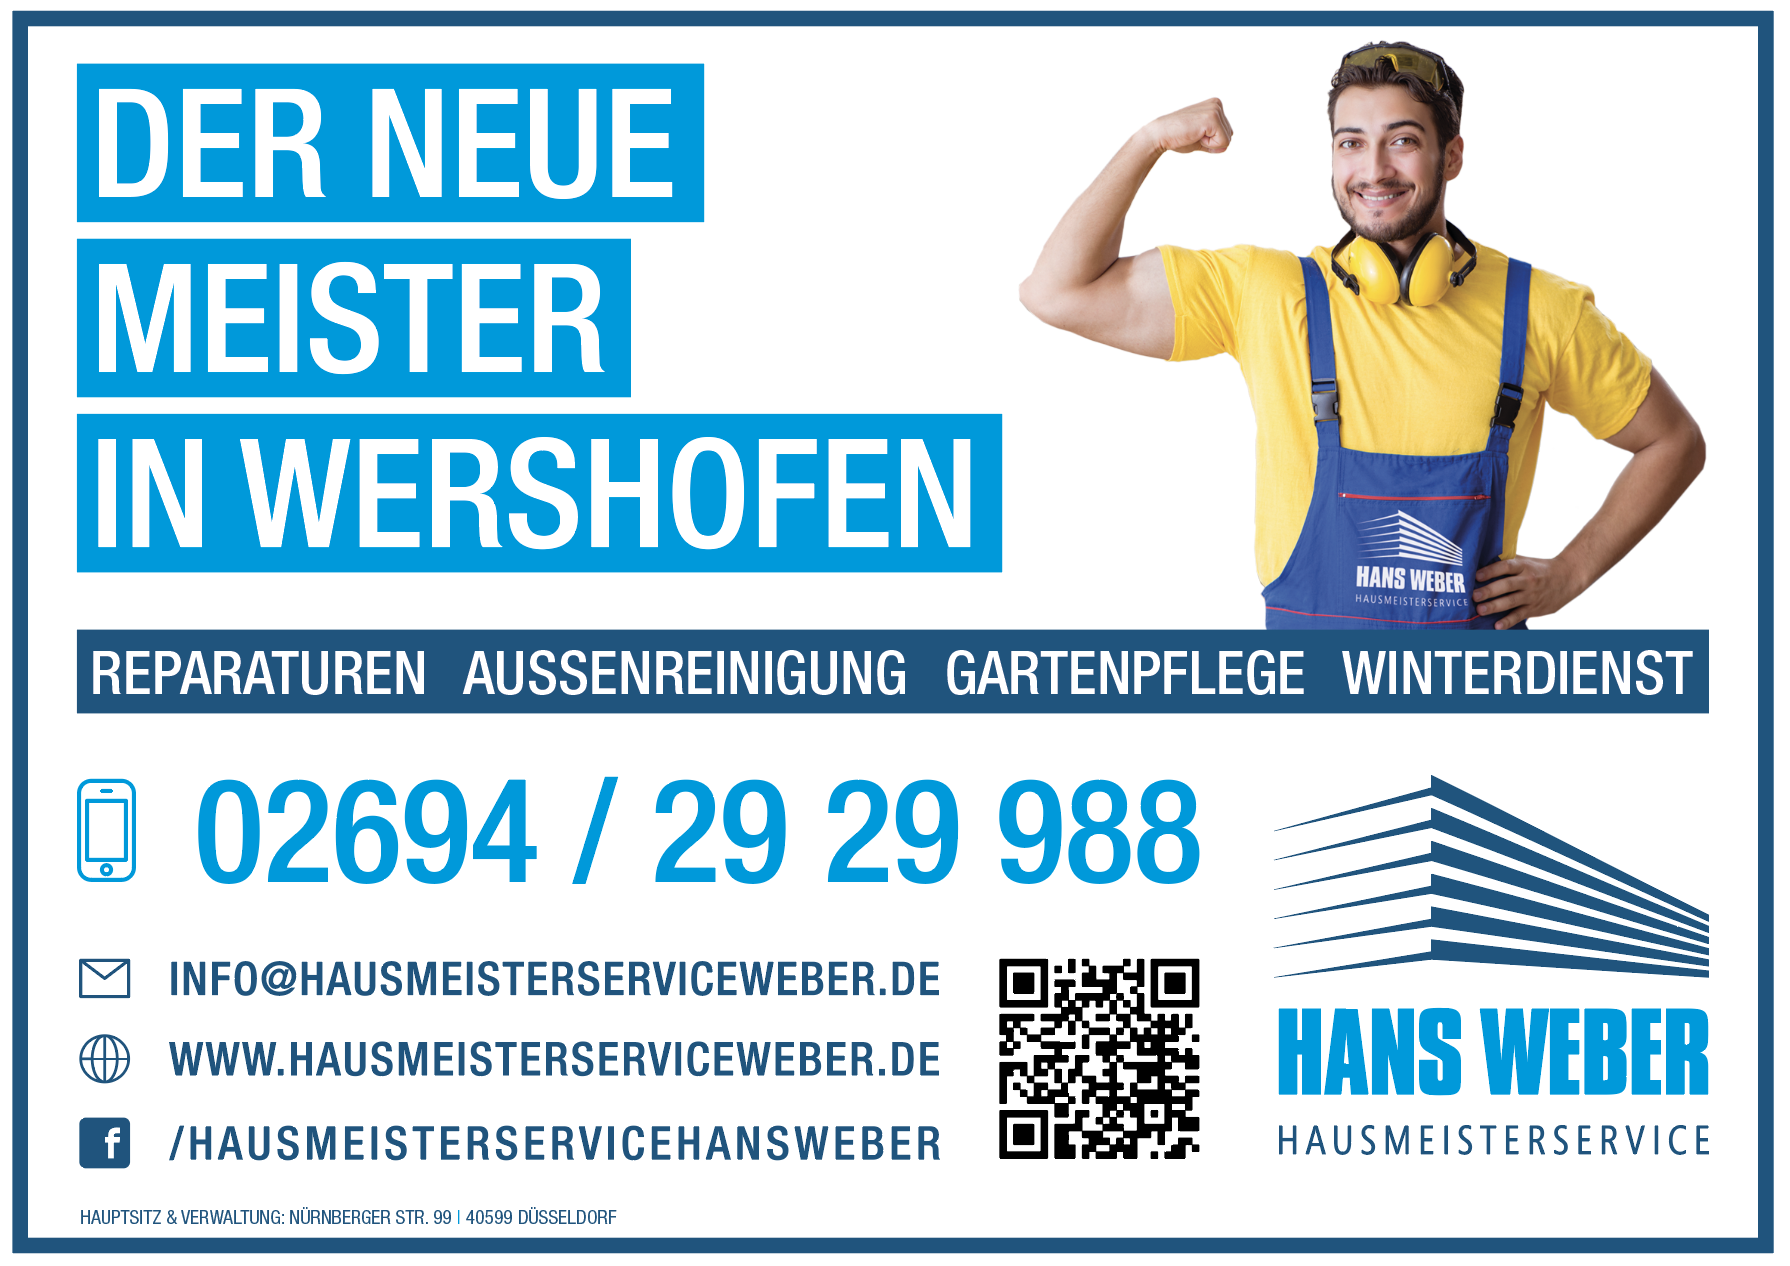 (c) Hausmeisterserviceweber.de